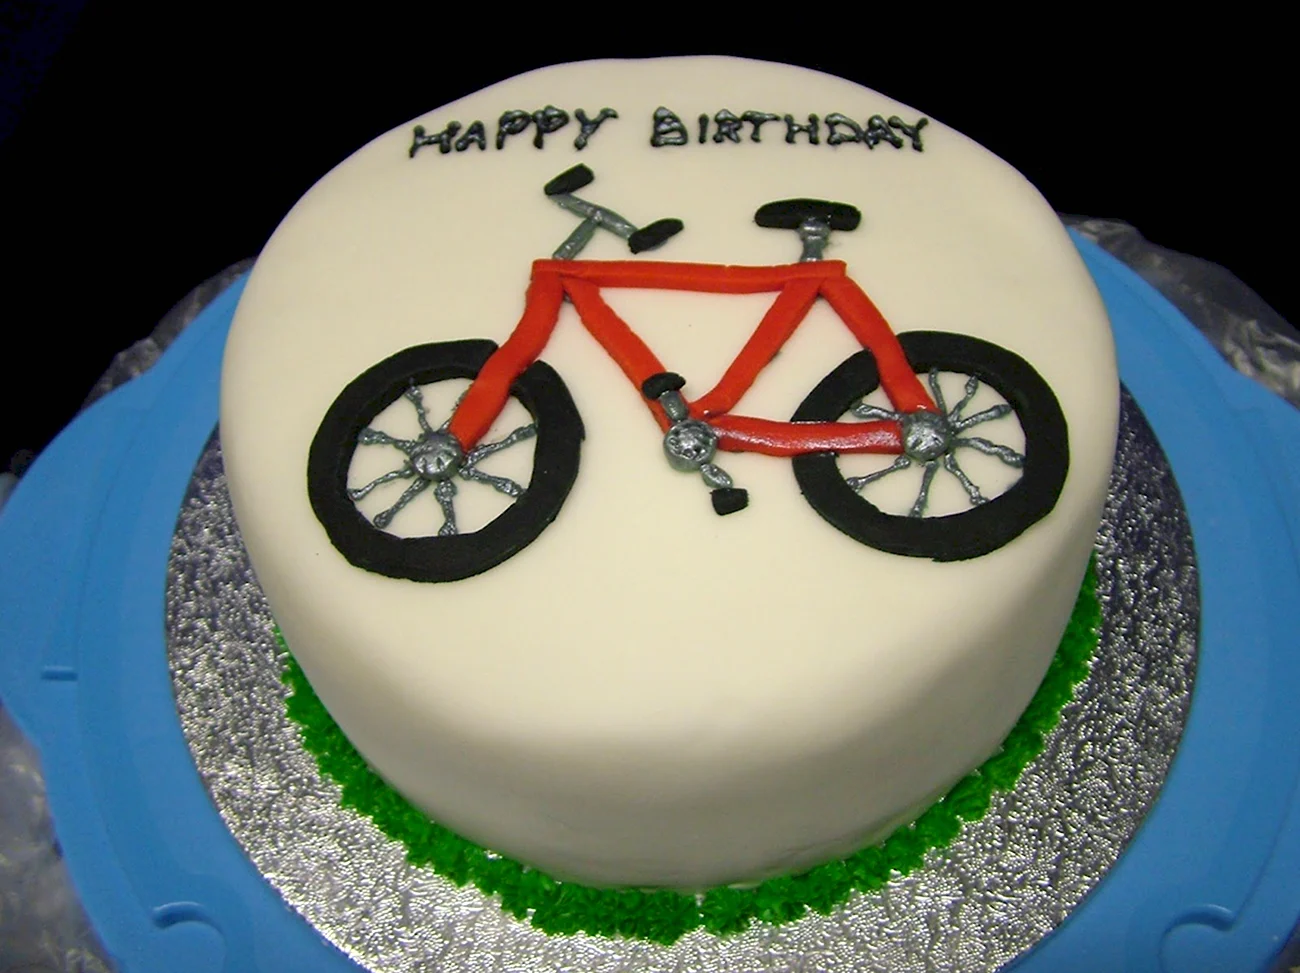 С днем рождения велосипедисту. Красивая картинка